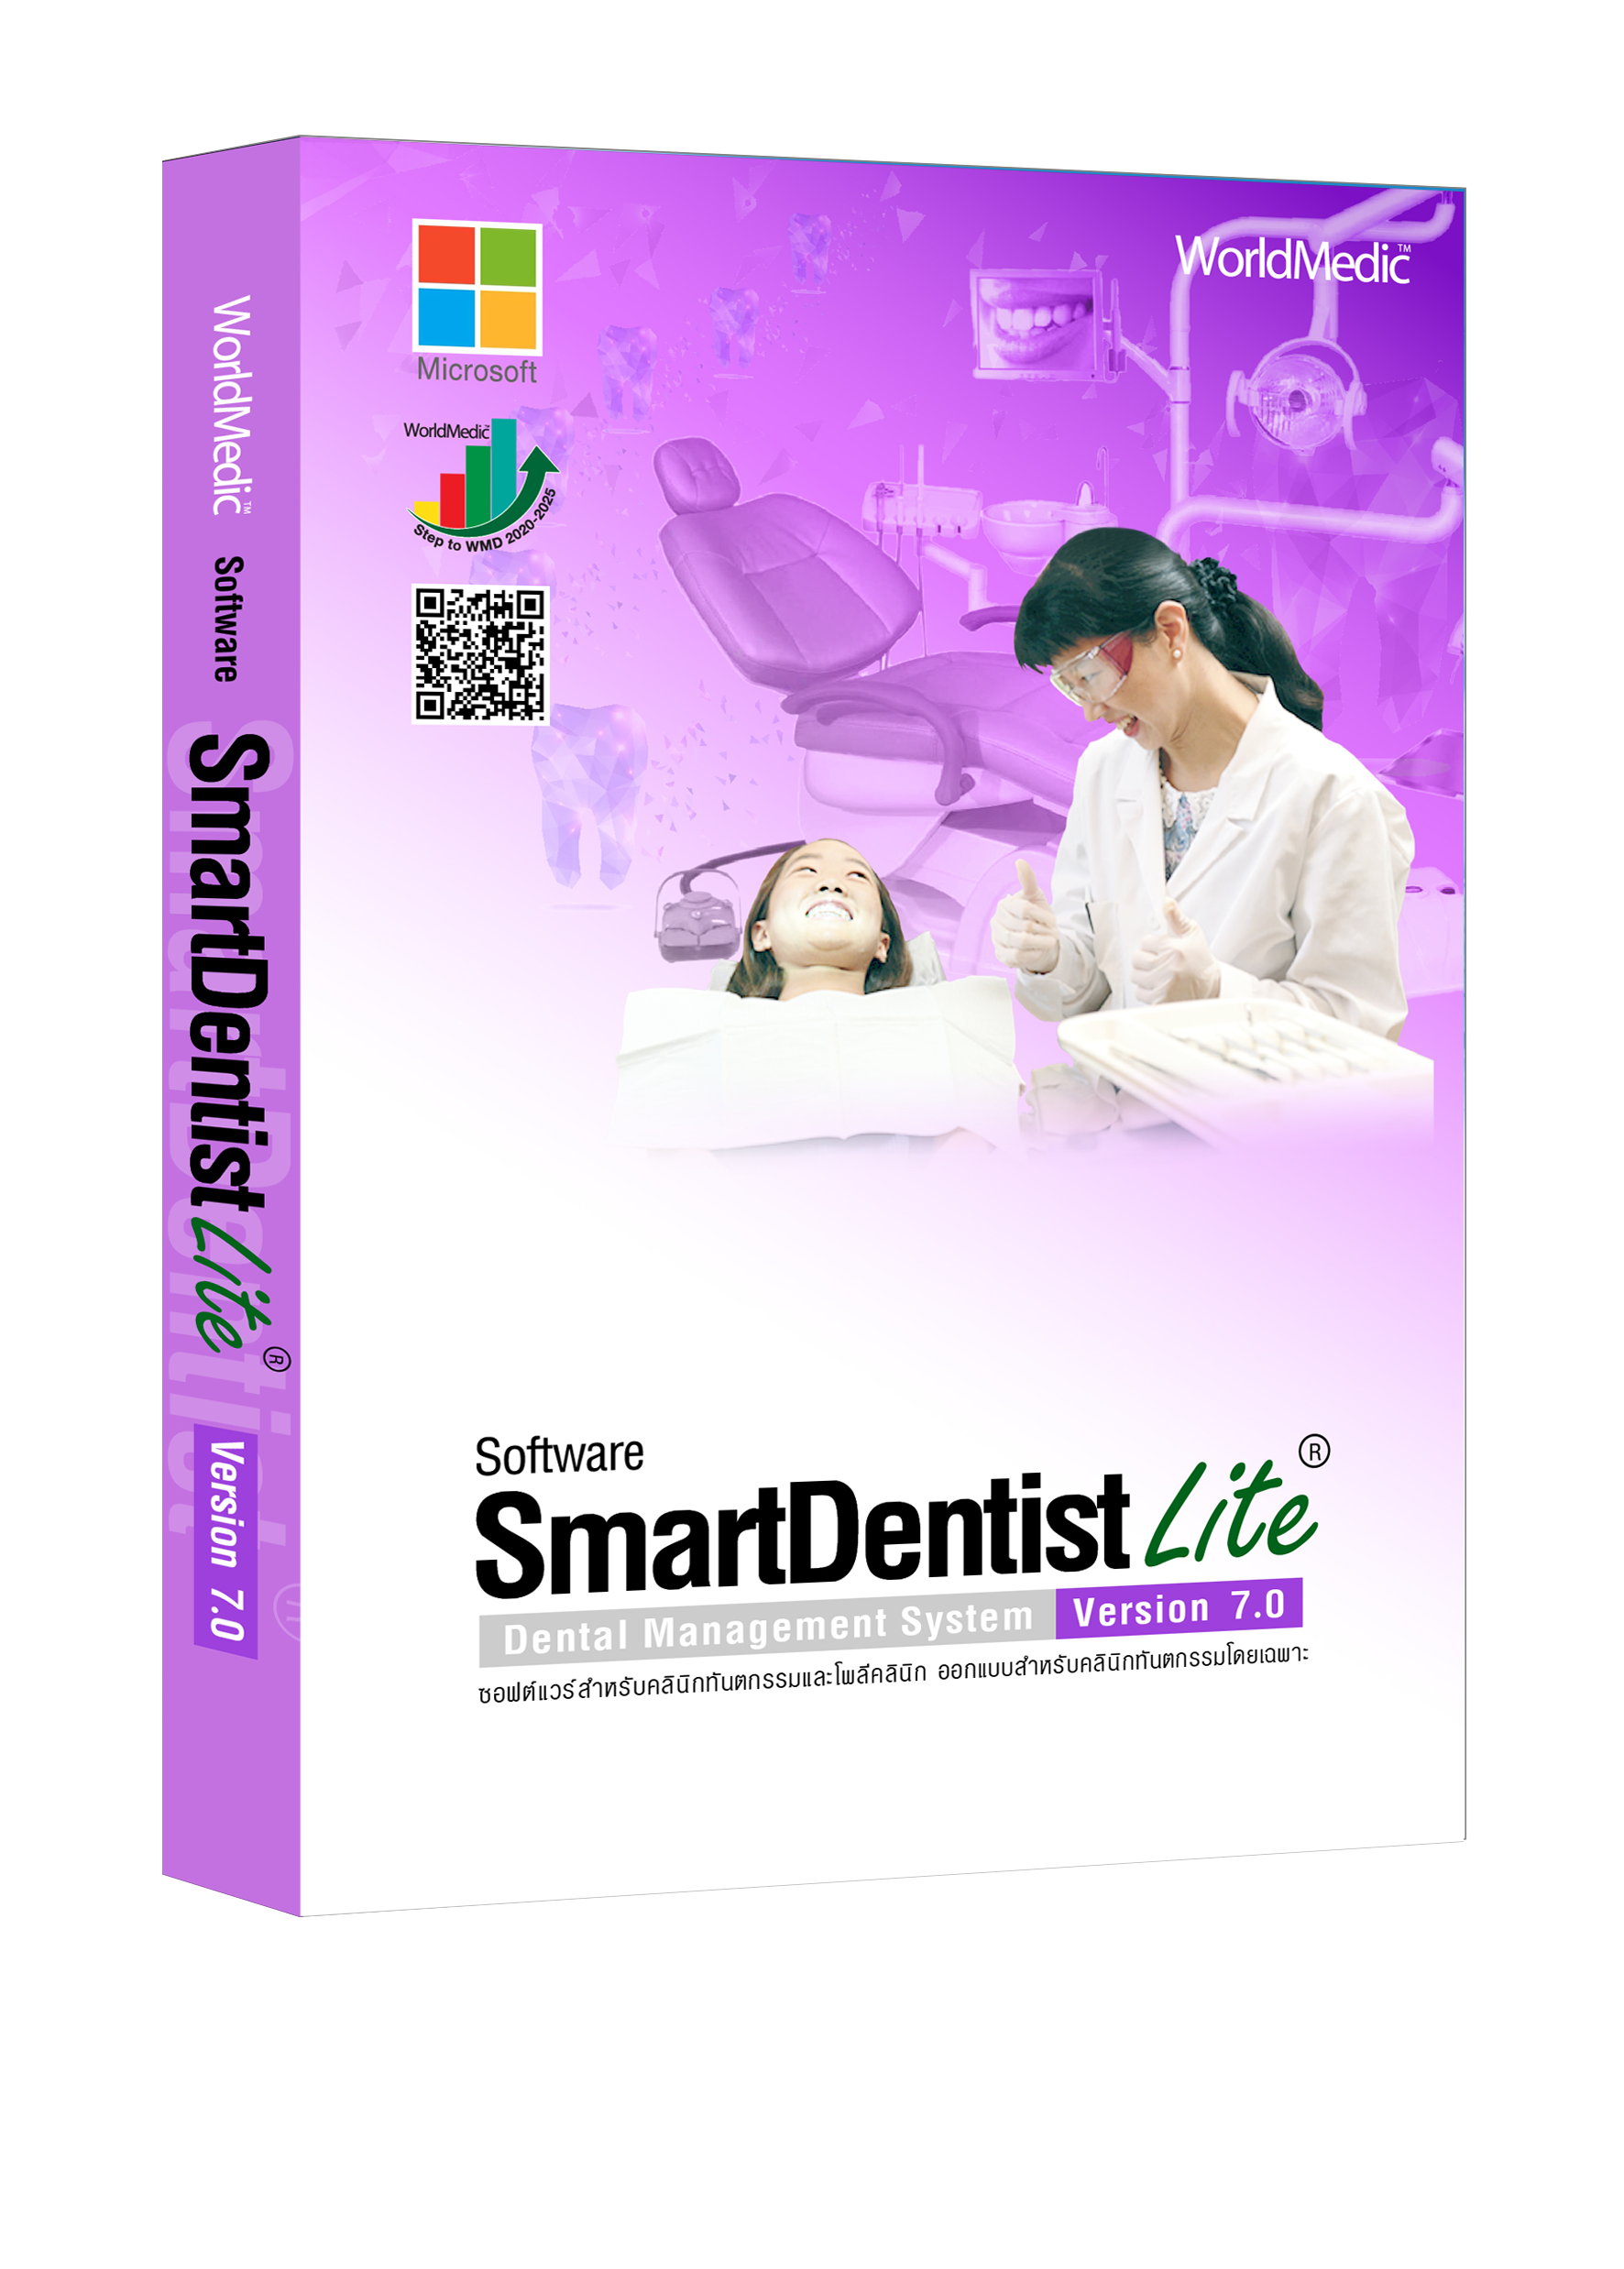 SmartDentist 5.0 Lite